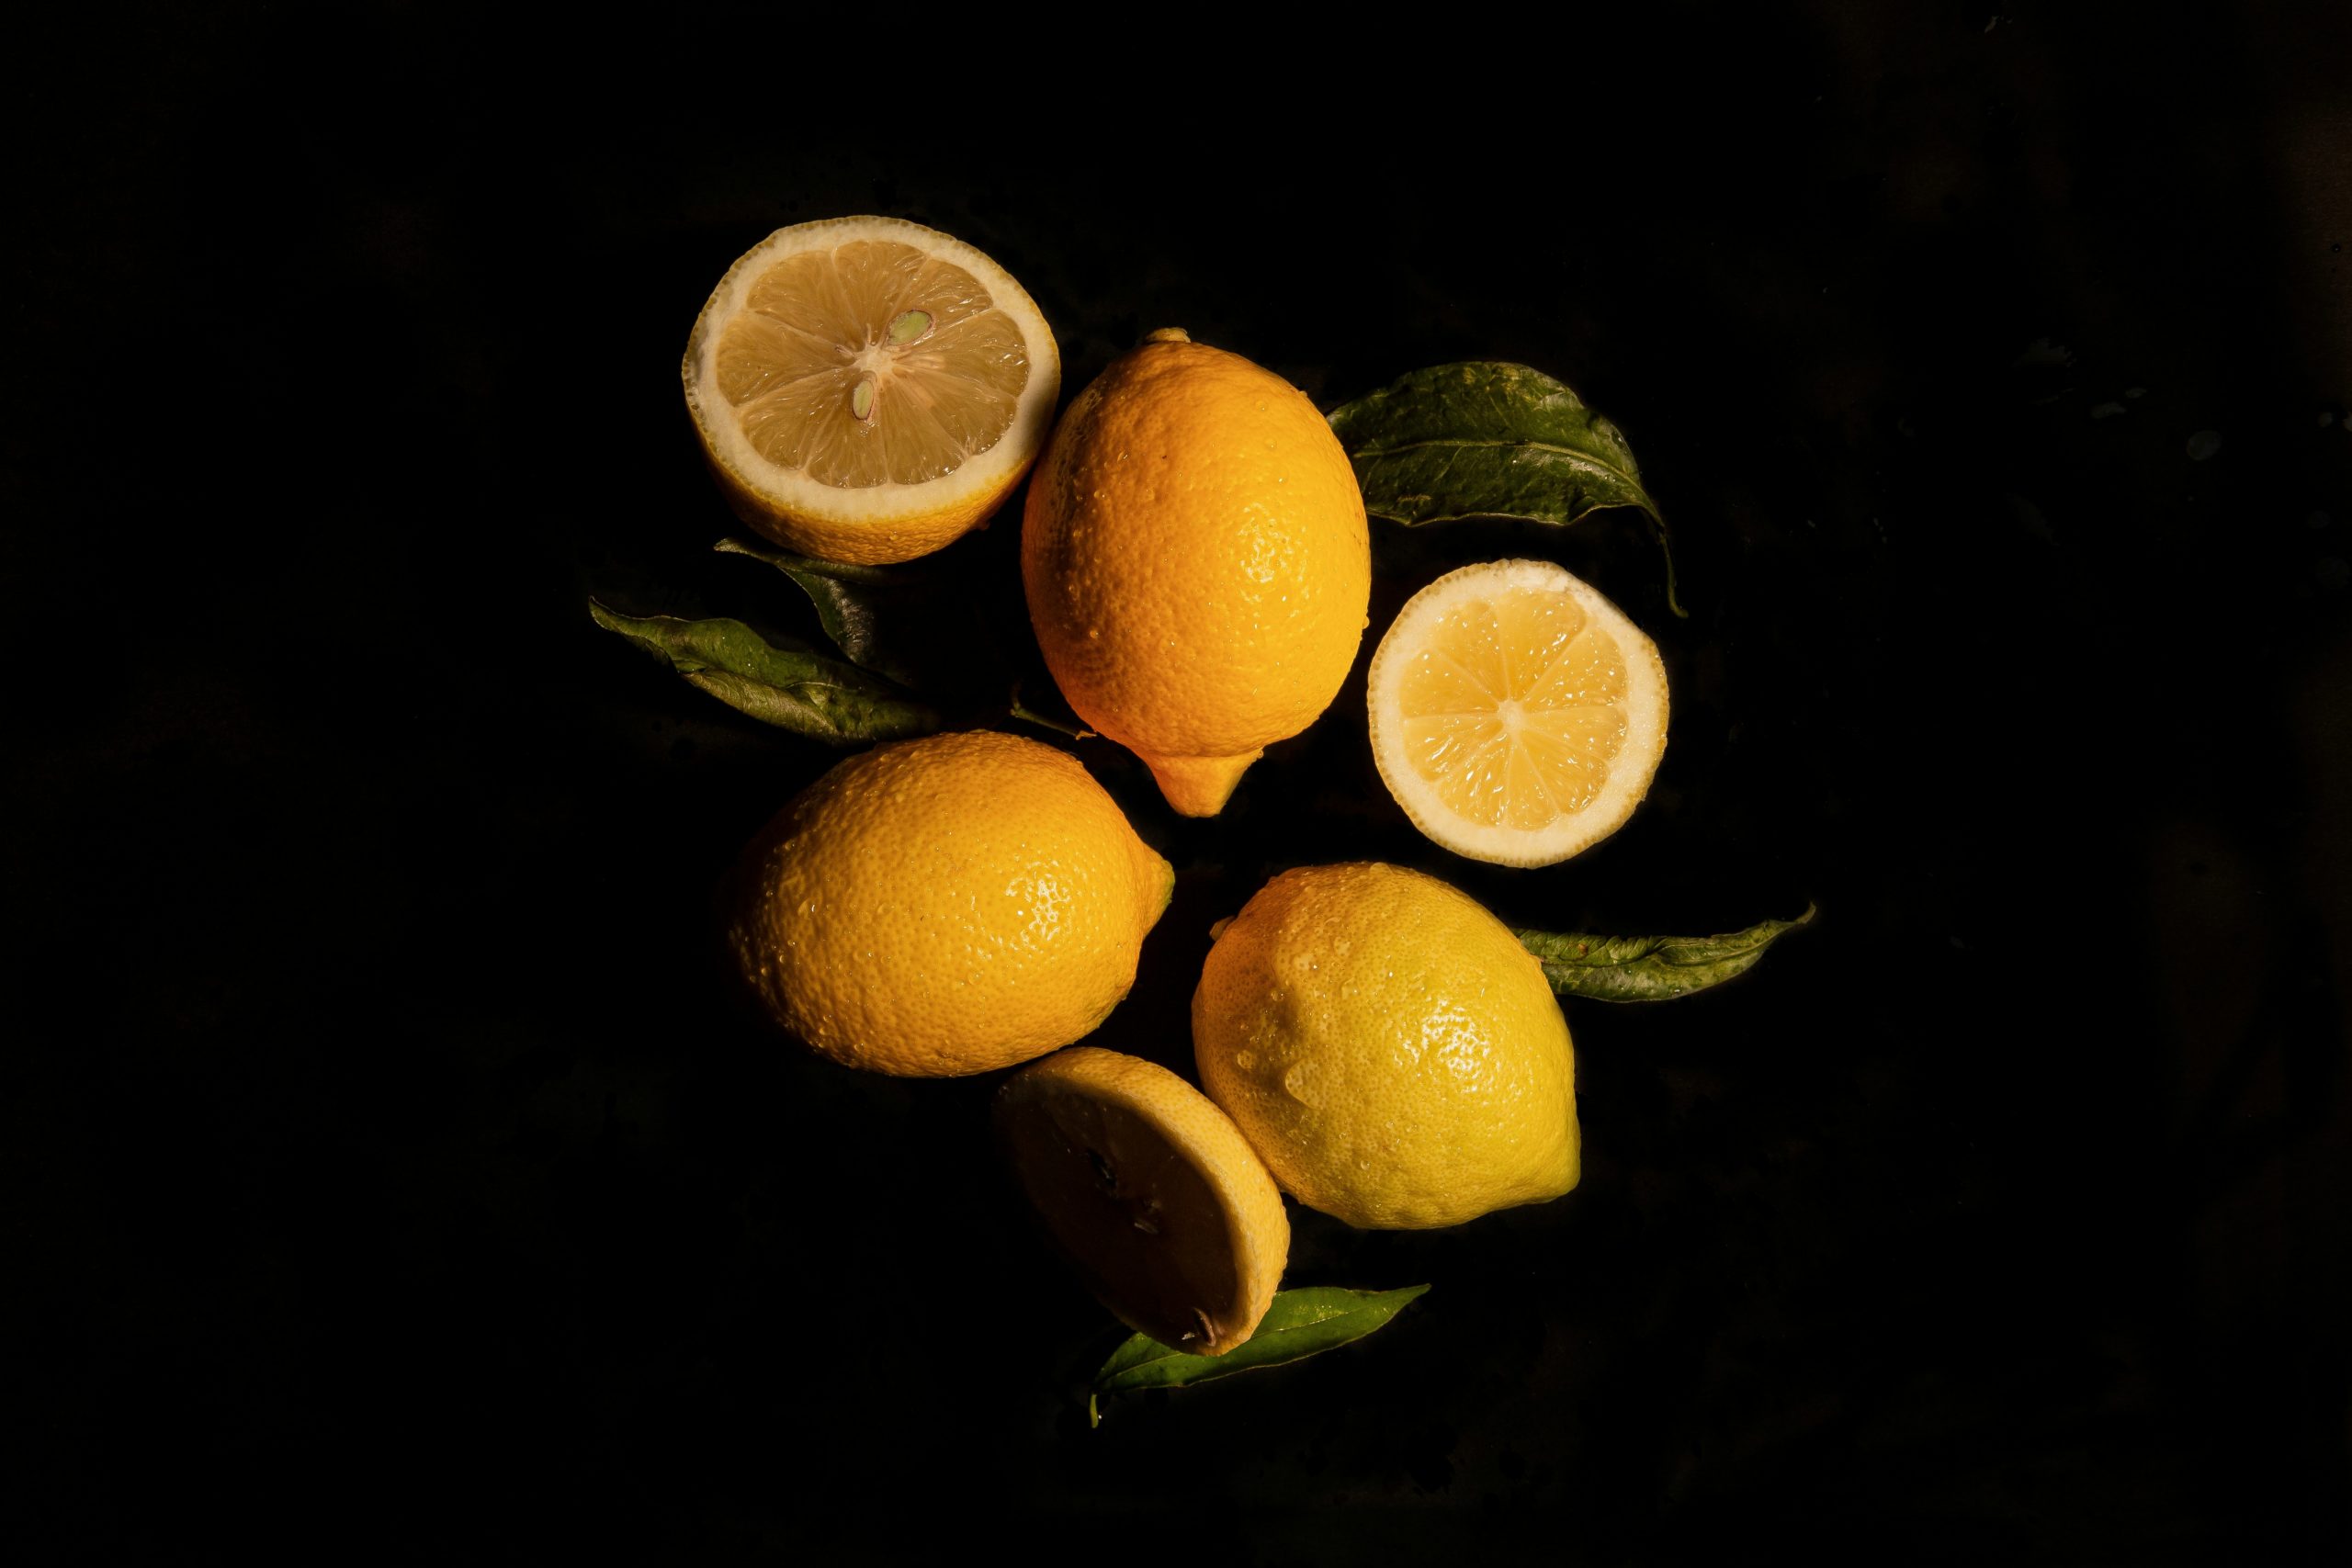 Πώς να αποθηκεύσετε τα λεμόνια ώστε να διατηρηθούν φρέσκα και ζουμερά για περισσότερο